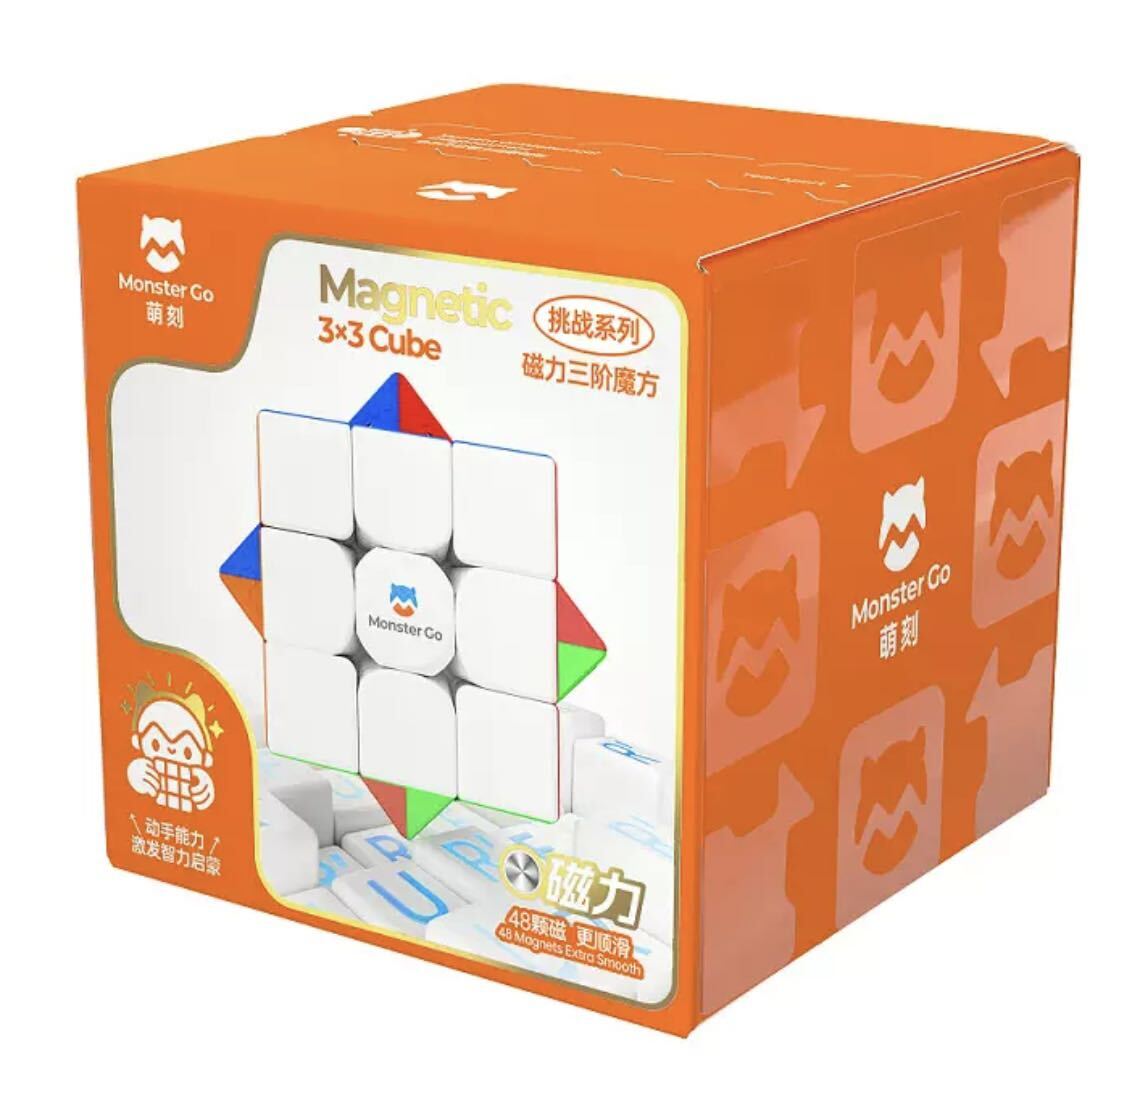 ルービックキューブGAN MG3 V2 EDUスピードキューブ立体パズル磁石搭載 ステッカーレス 競技用 知育玩具 子供プレゼントの画像6